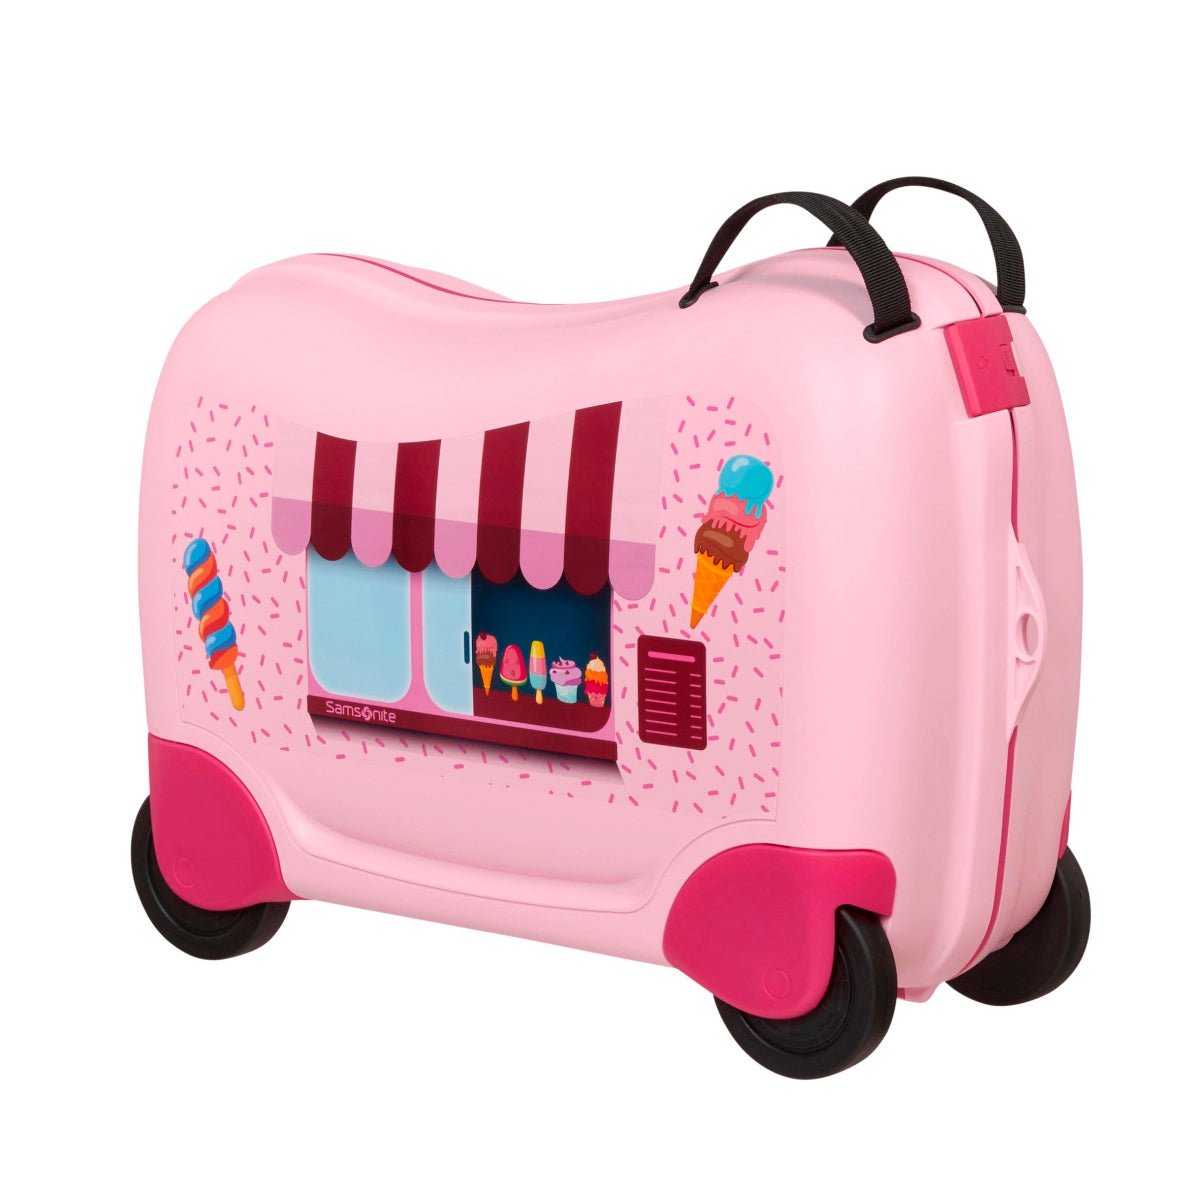 Samsonite Dream2Go Ride-On Suitcase 52 cm - Ice Cream Van